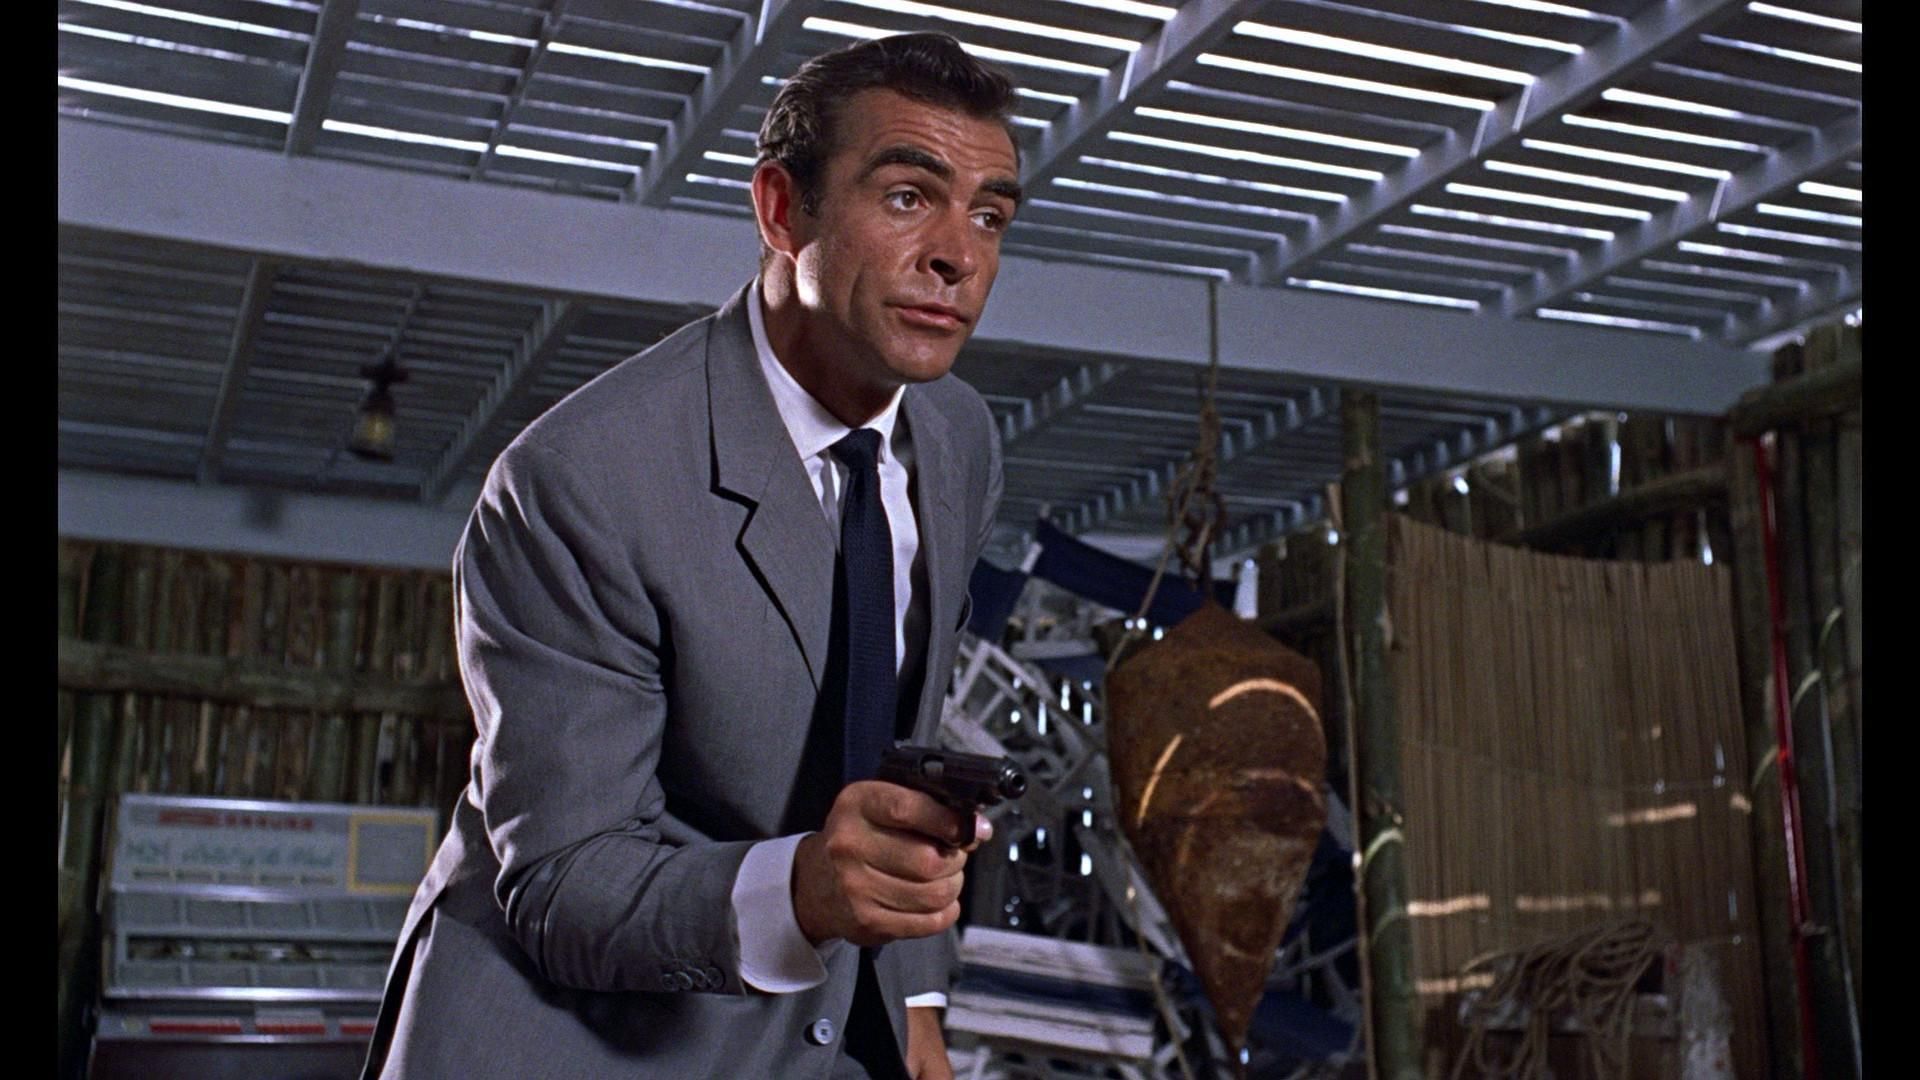 Cine En La 2 Agente 007 Contra El Dr No Con Sean Connery